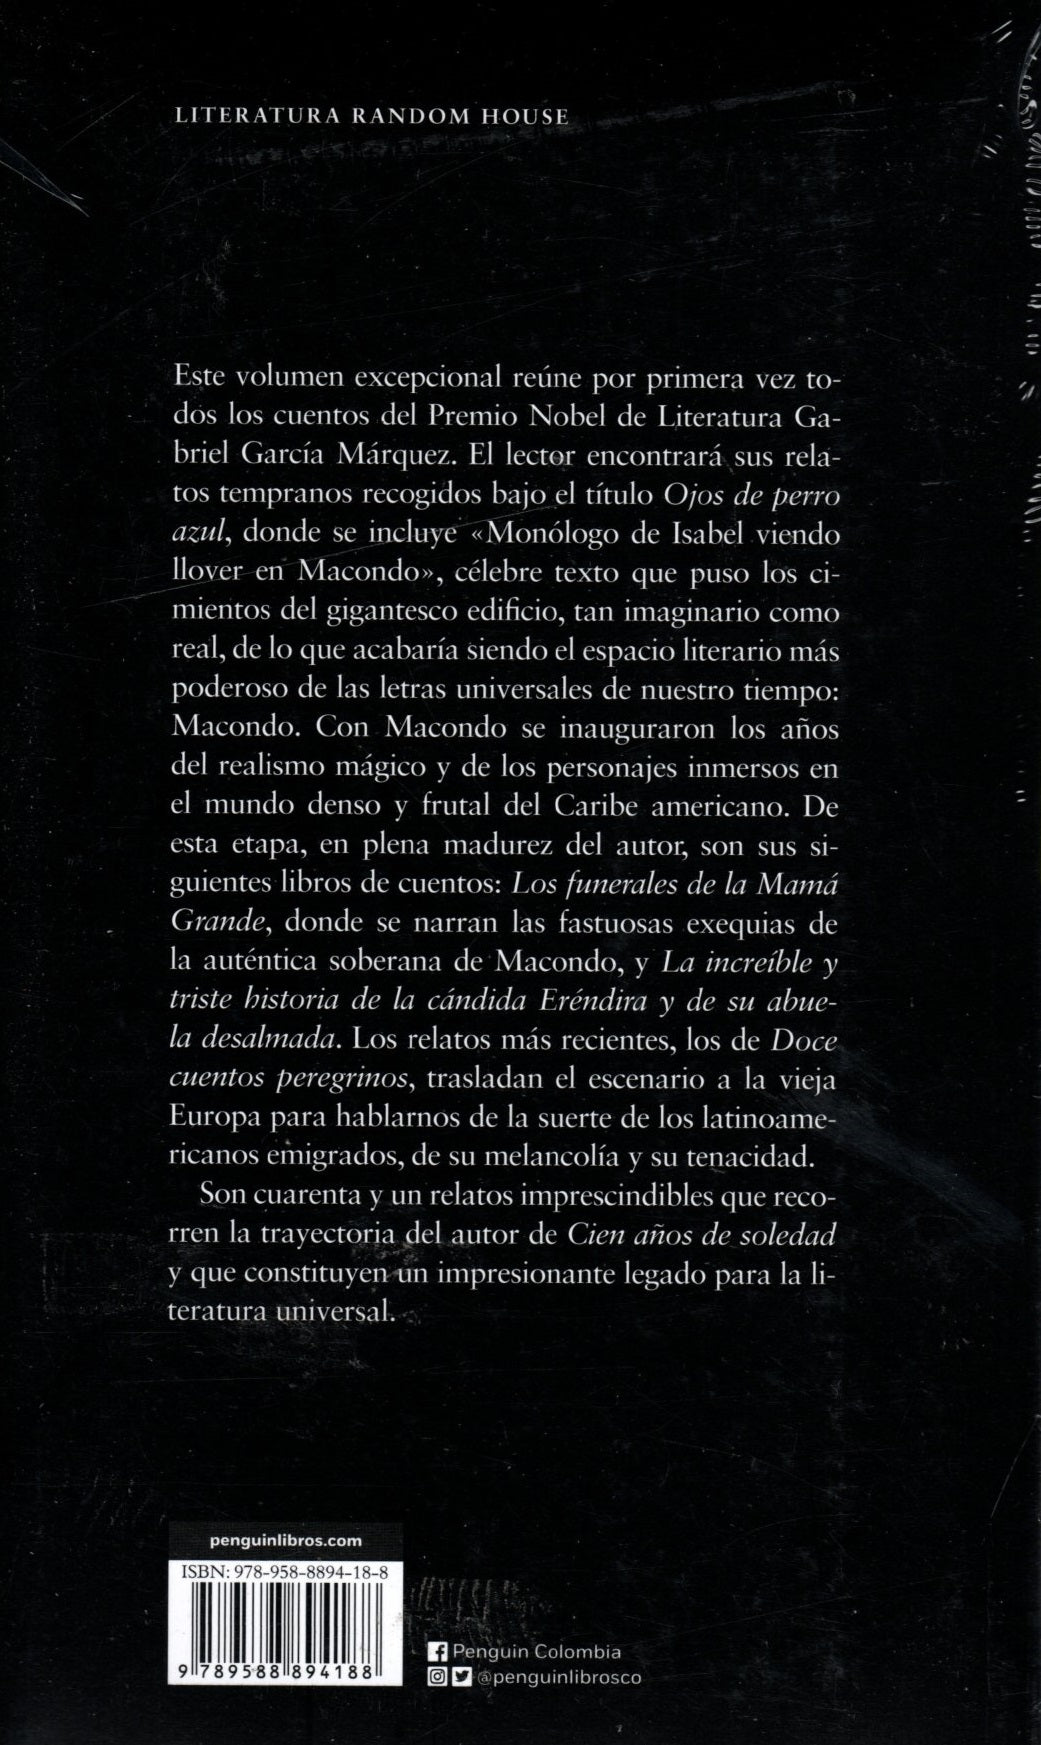 Libro Gabriel García Márquez - Todos Los Cuentos